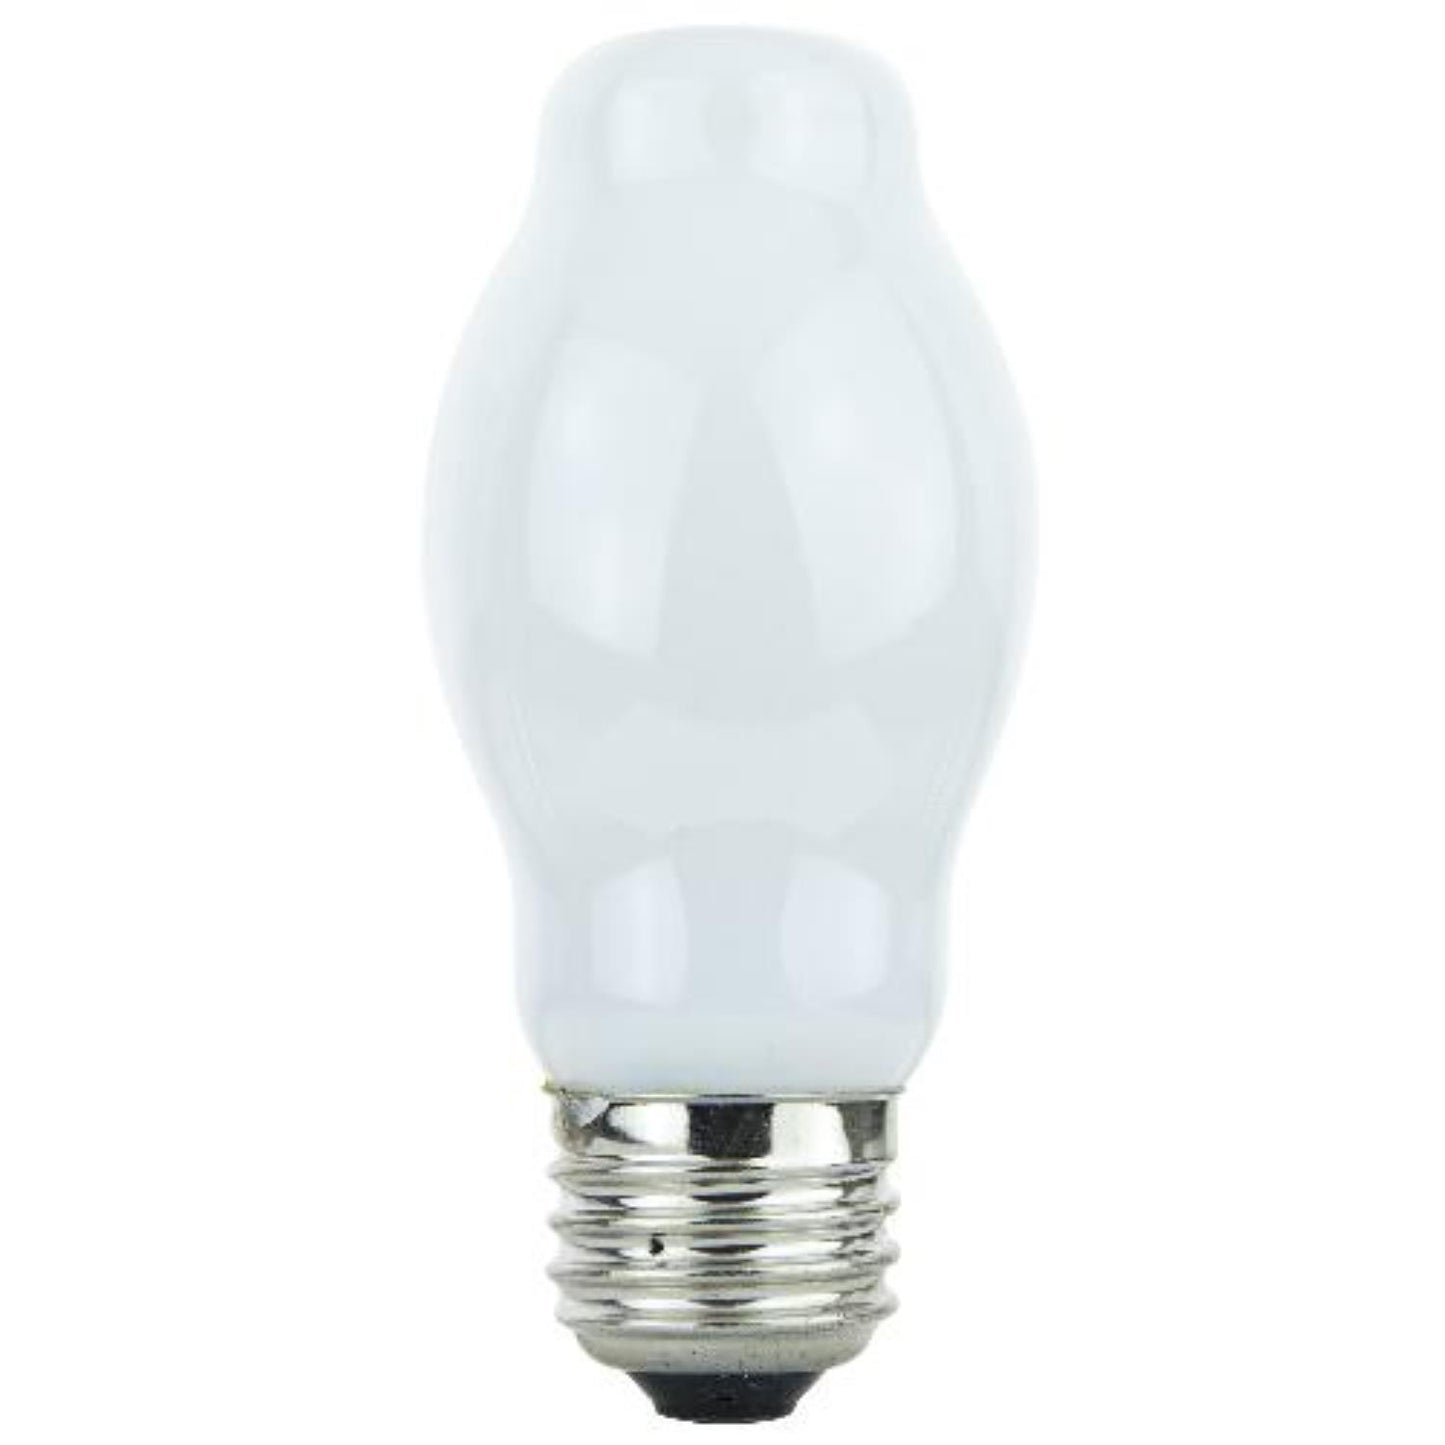 Sunlite Halogen 60 Watt BT15 720 Lumens Medium Base Light Bulb